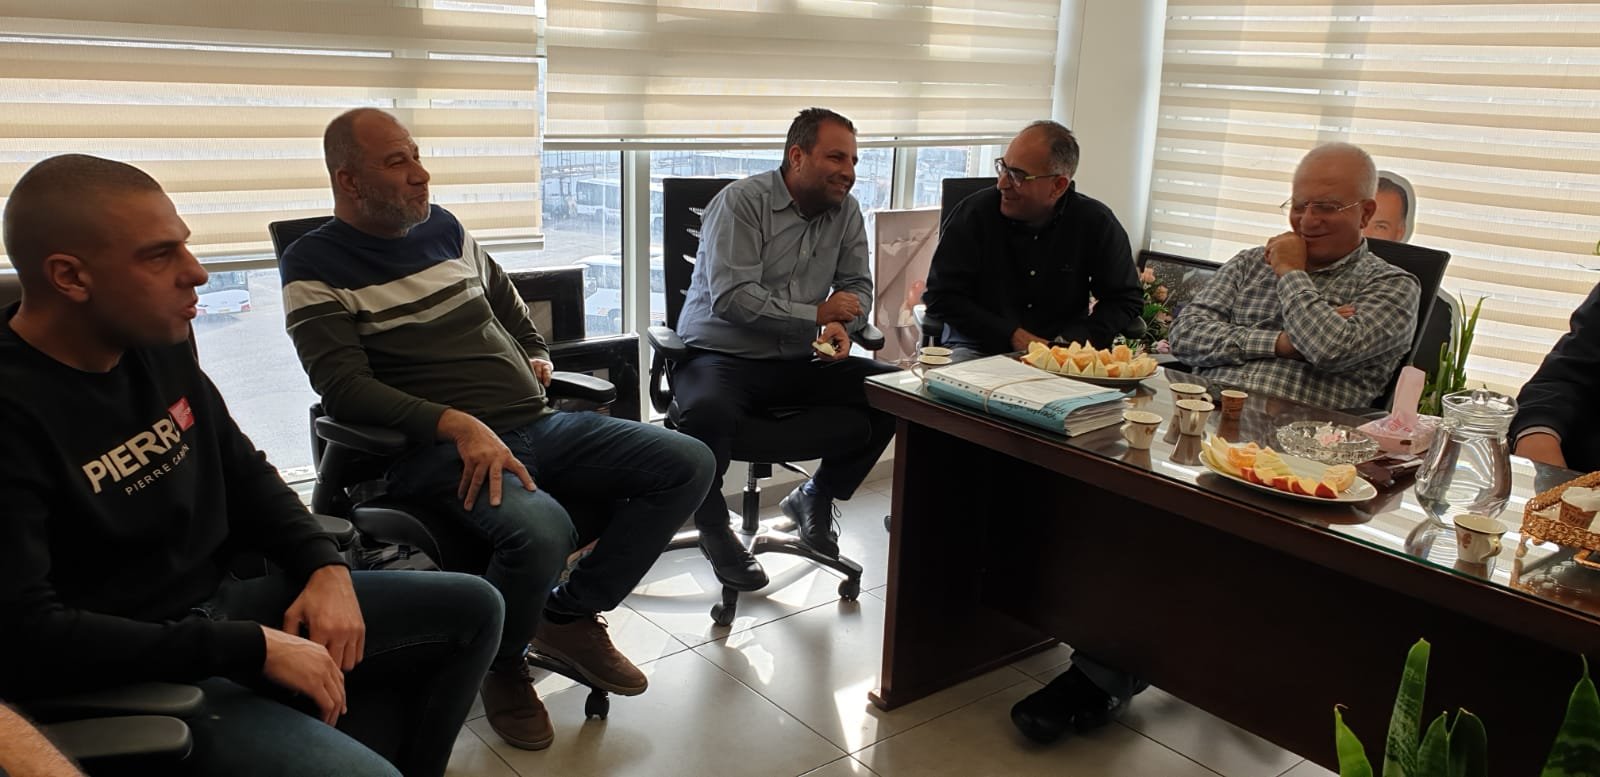 رسميًا رجوان غريب مدير عام رابطة جبال الناصرة-1